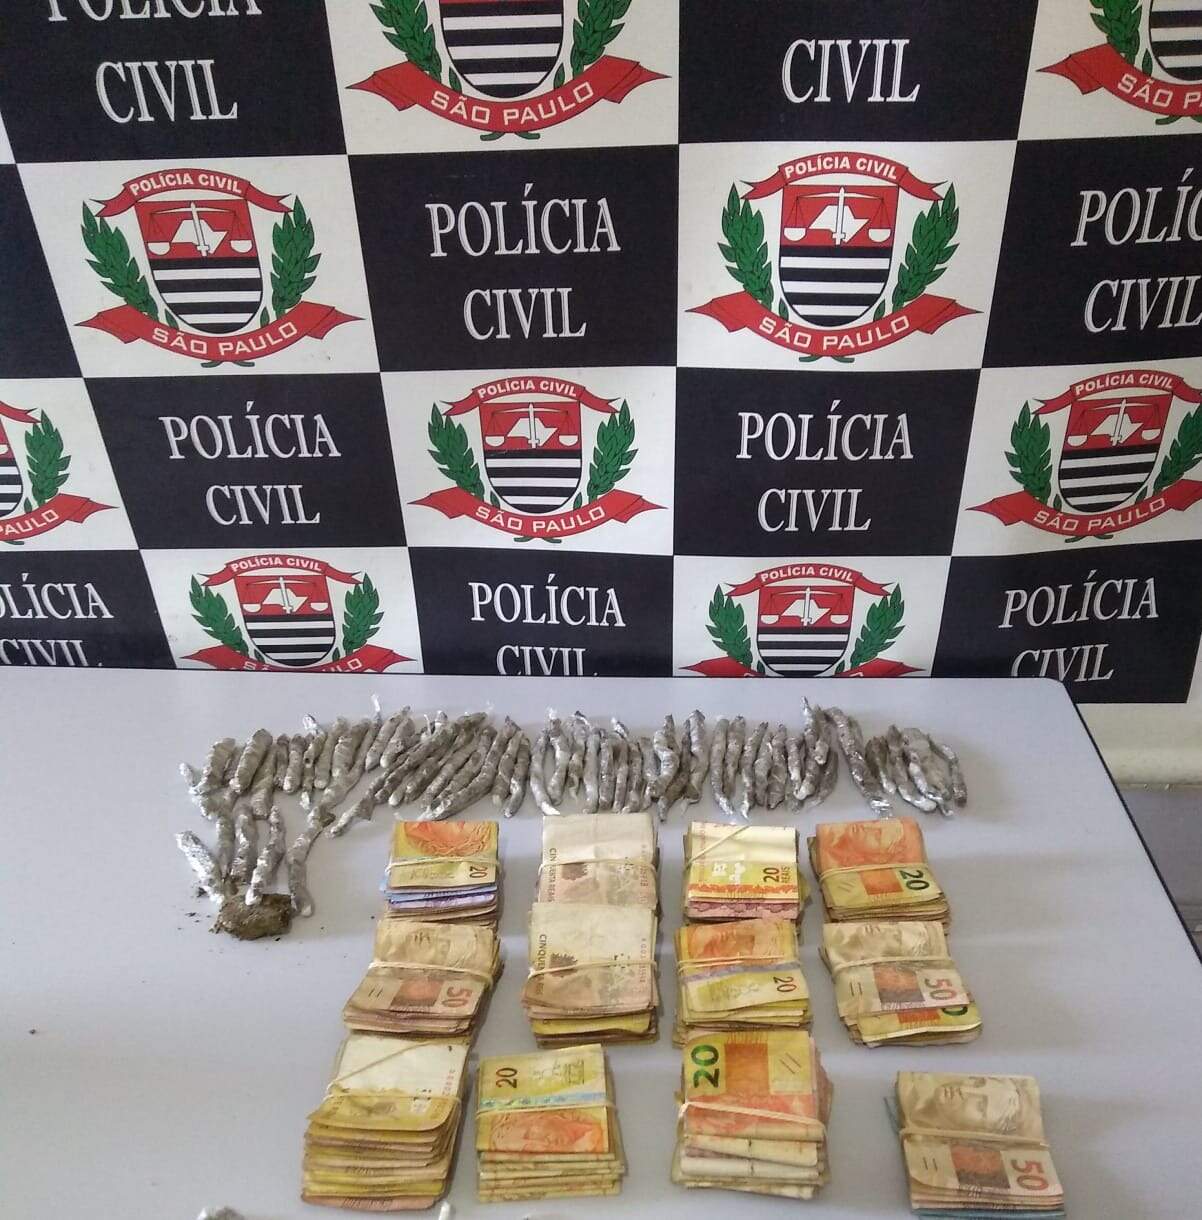 Policiais encontraram porções de droga e R$ 11.780,00, em notas de pequeno valor